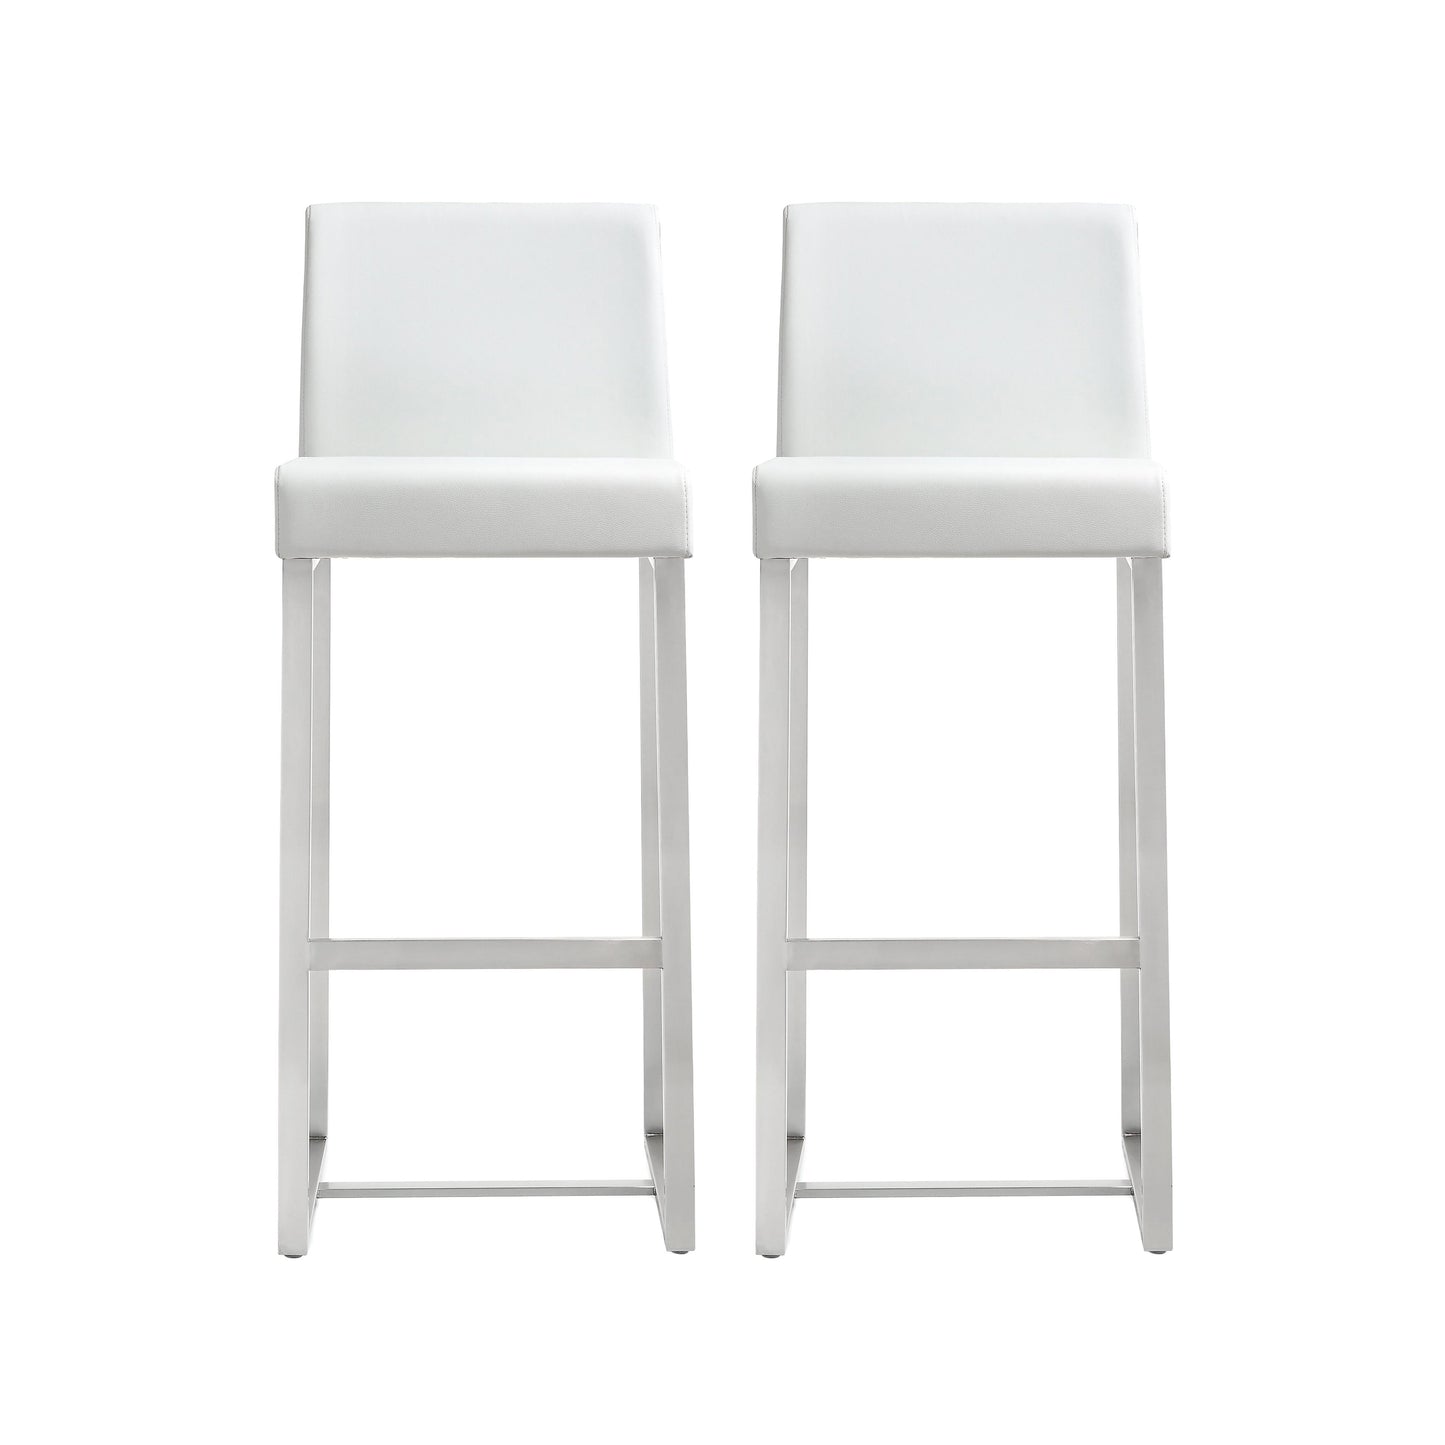 Tov Furniture Denmark White Stainless Steel Barstool Set of 2